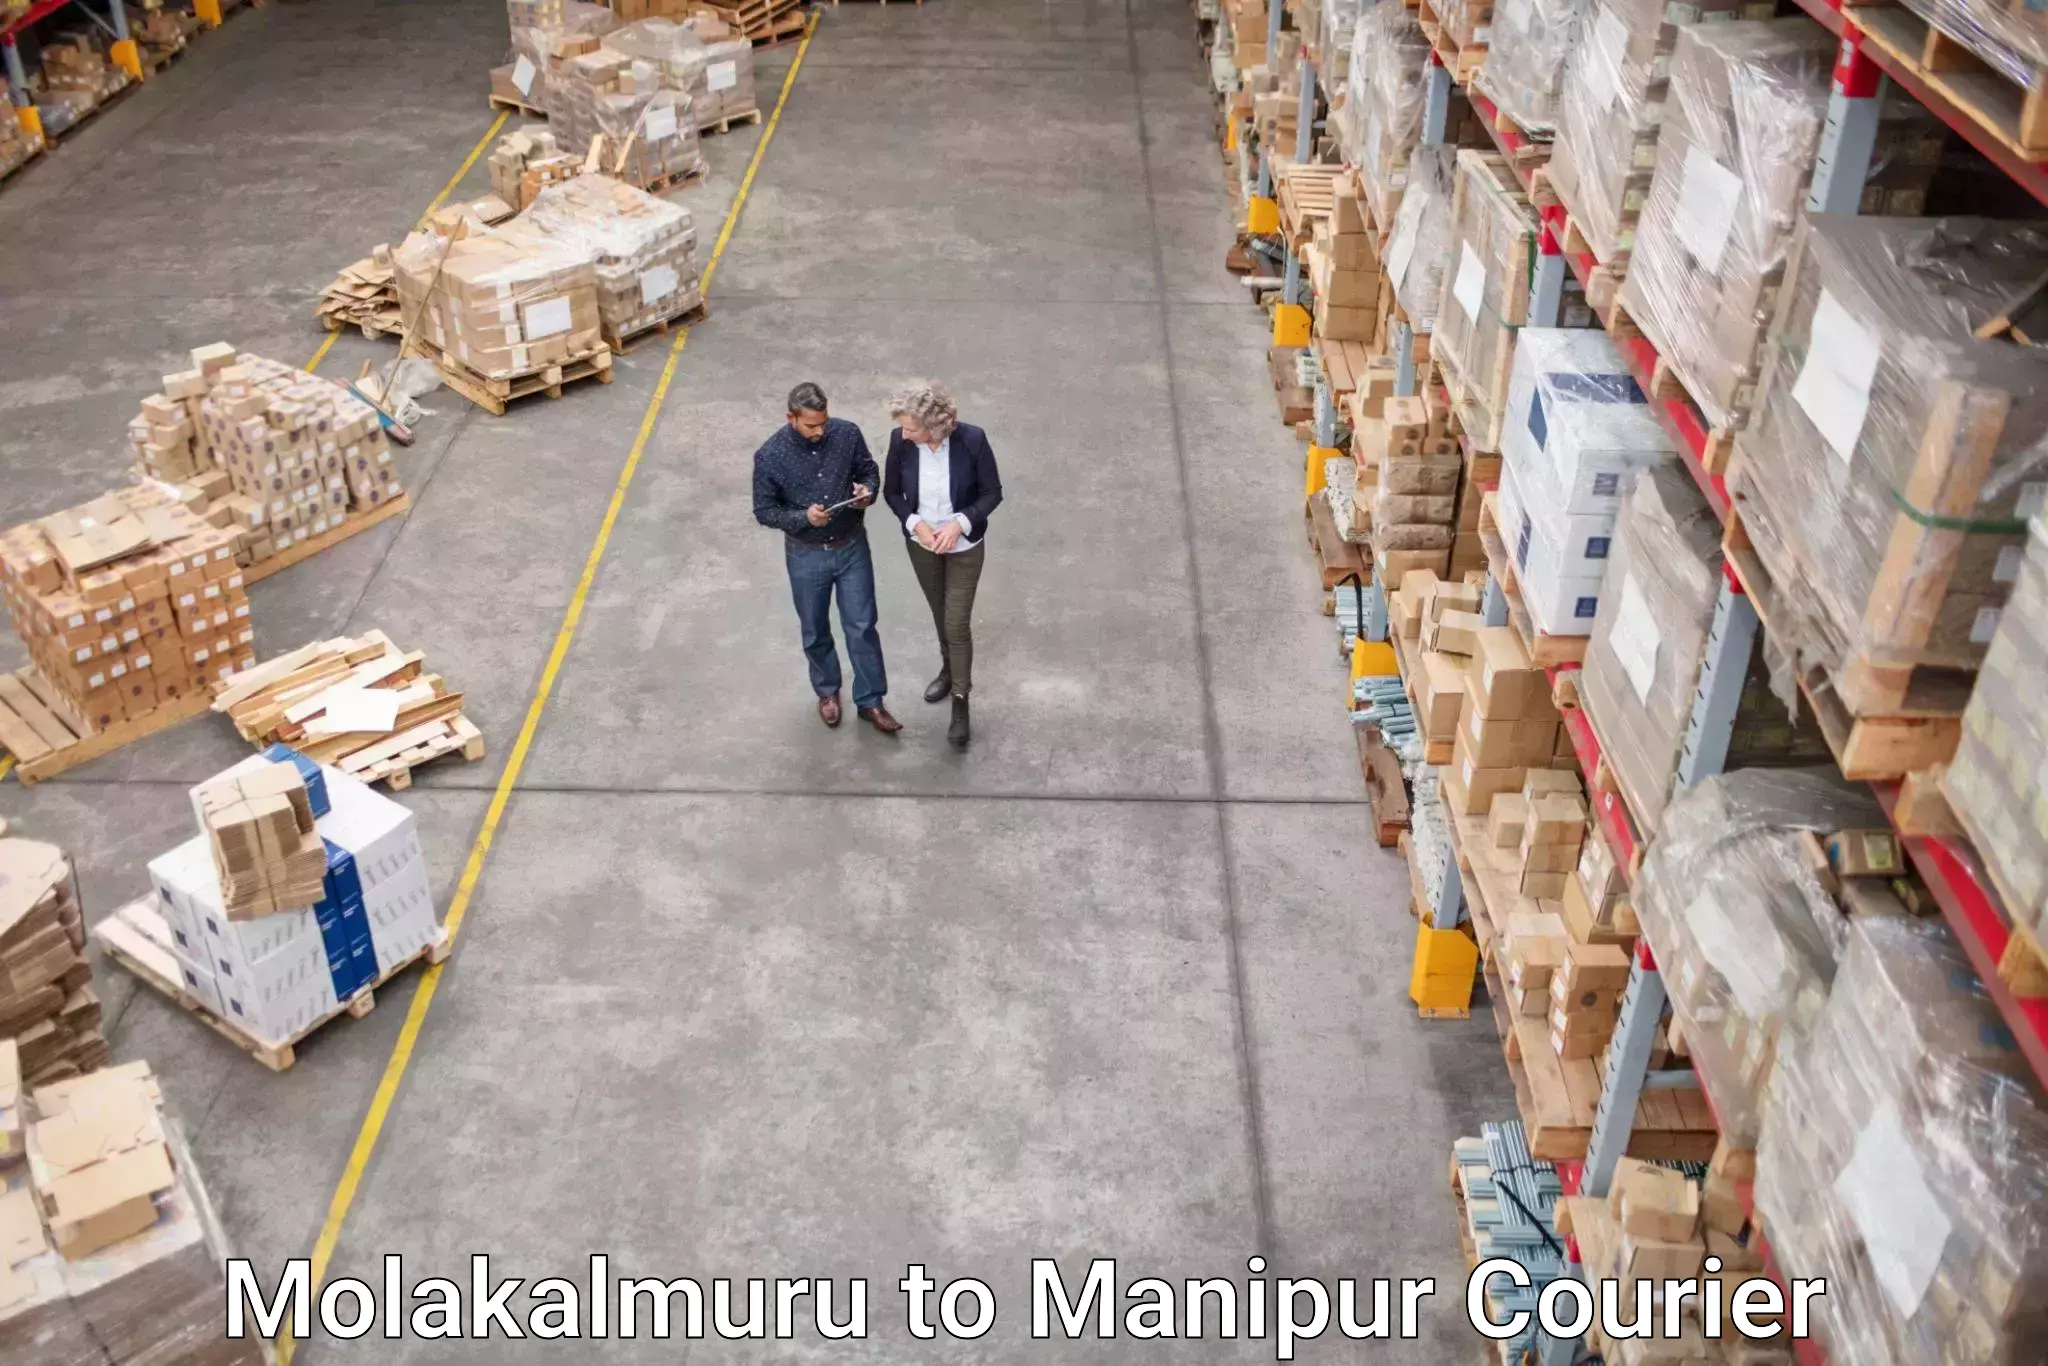 Courier service comparison Molakalmuru to Chandel